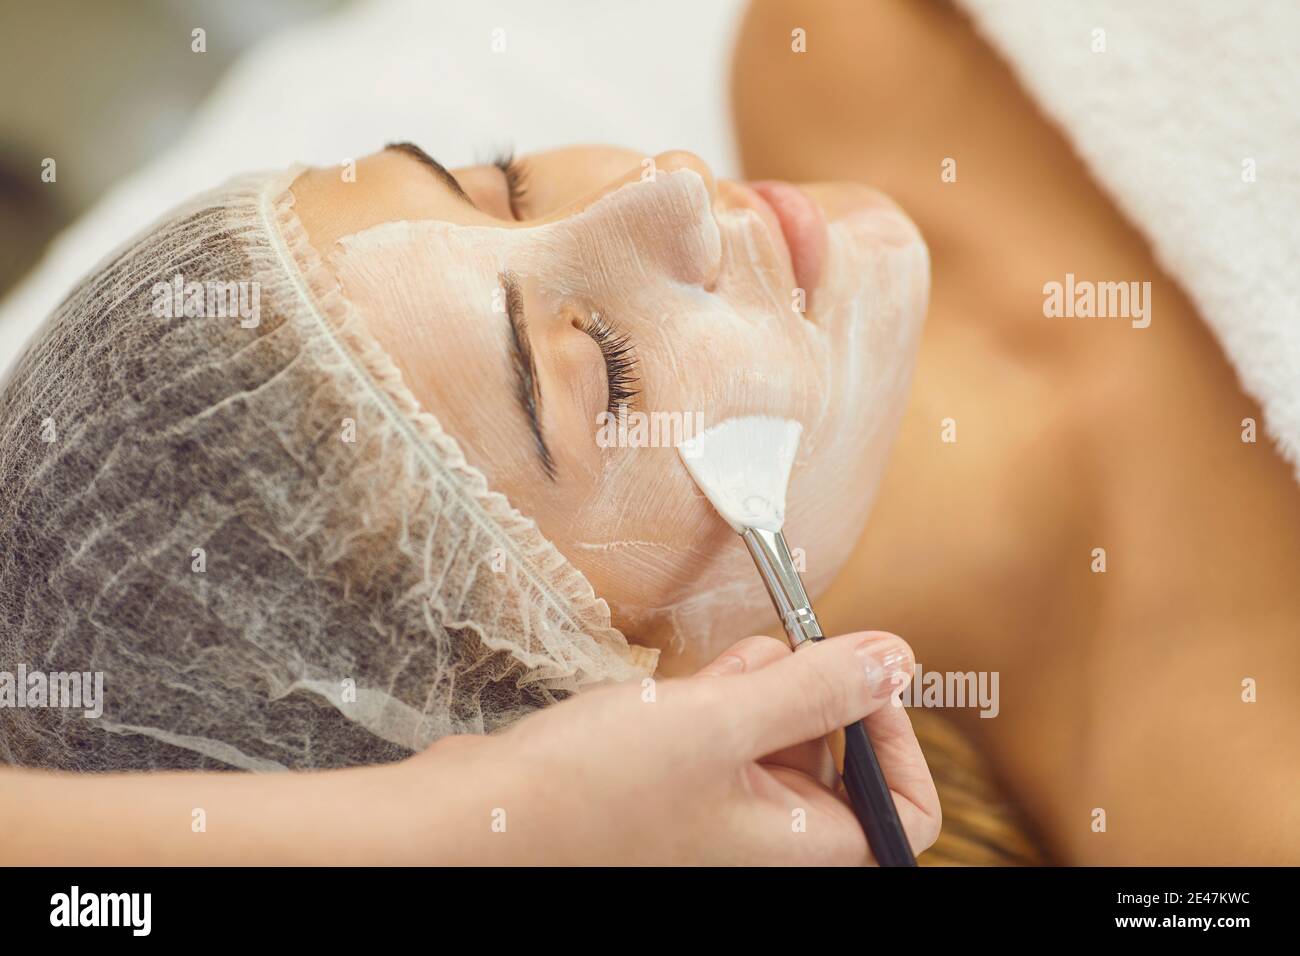 Gros plan du visage des femmes pendant la procédure de beauté du masque hydratant application Banque D'Images